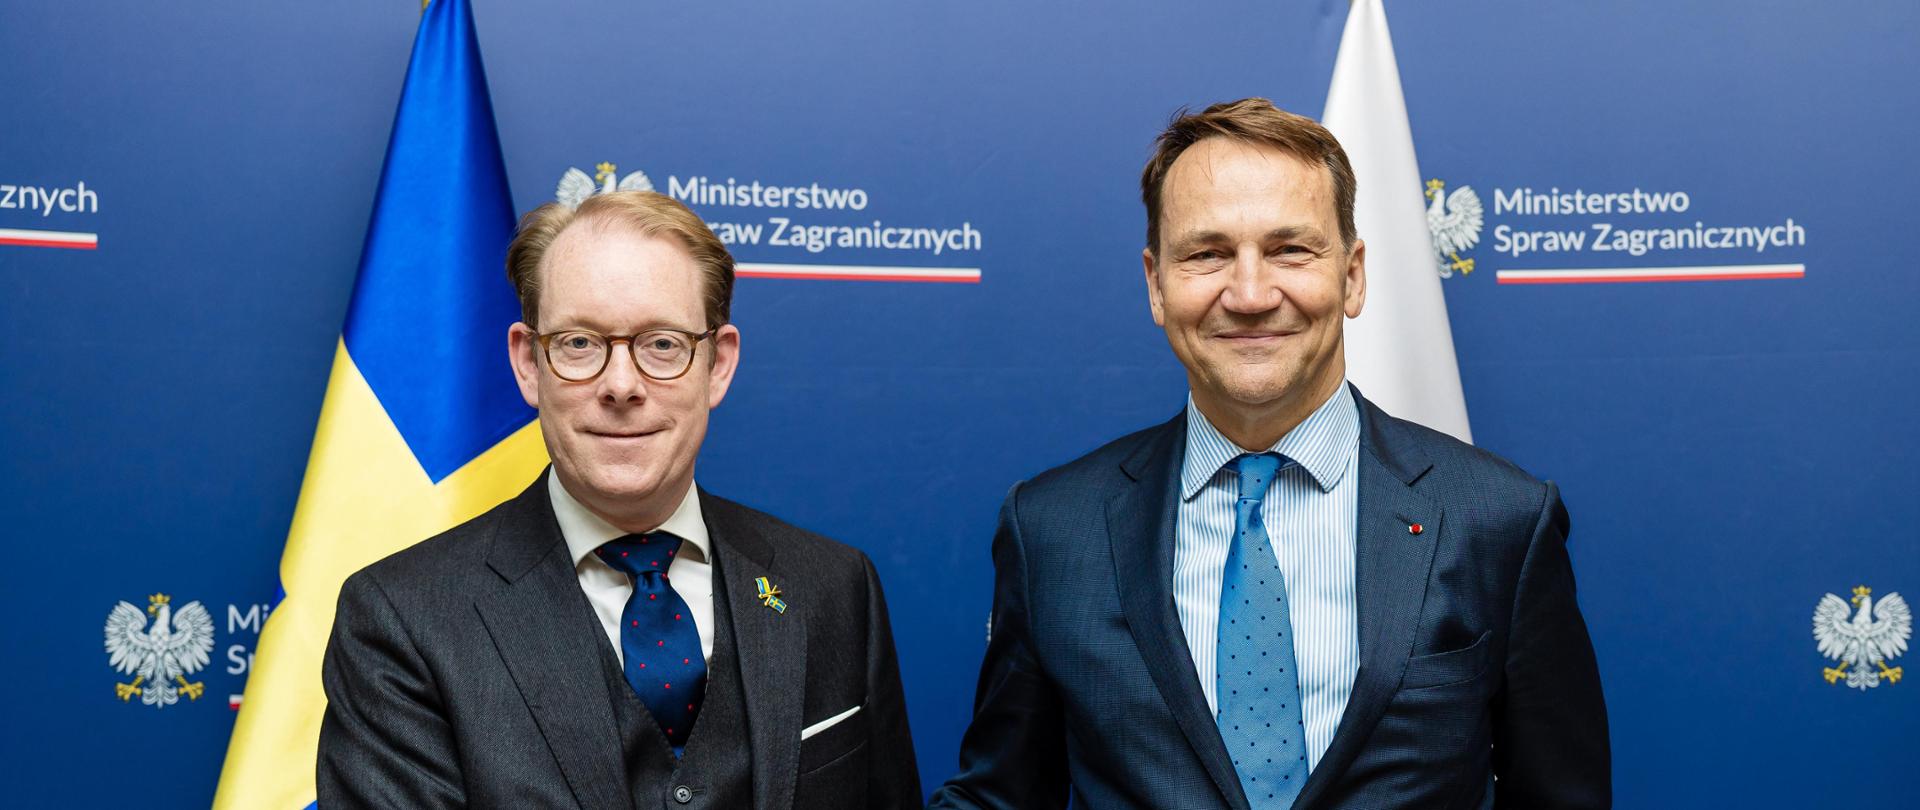 Minister Radosław Sikorski spotkał się z szefem szwedzkiej dyplomacji Tobiasem Billströmem